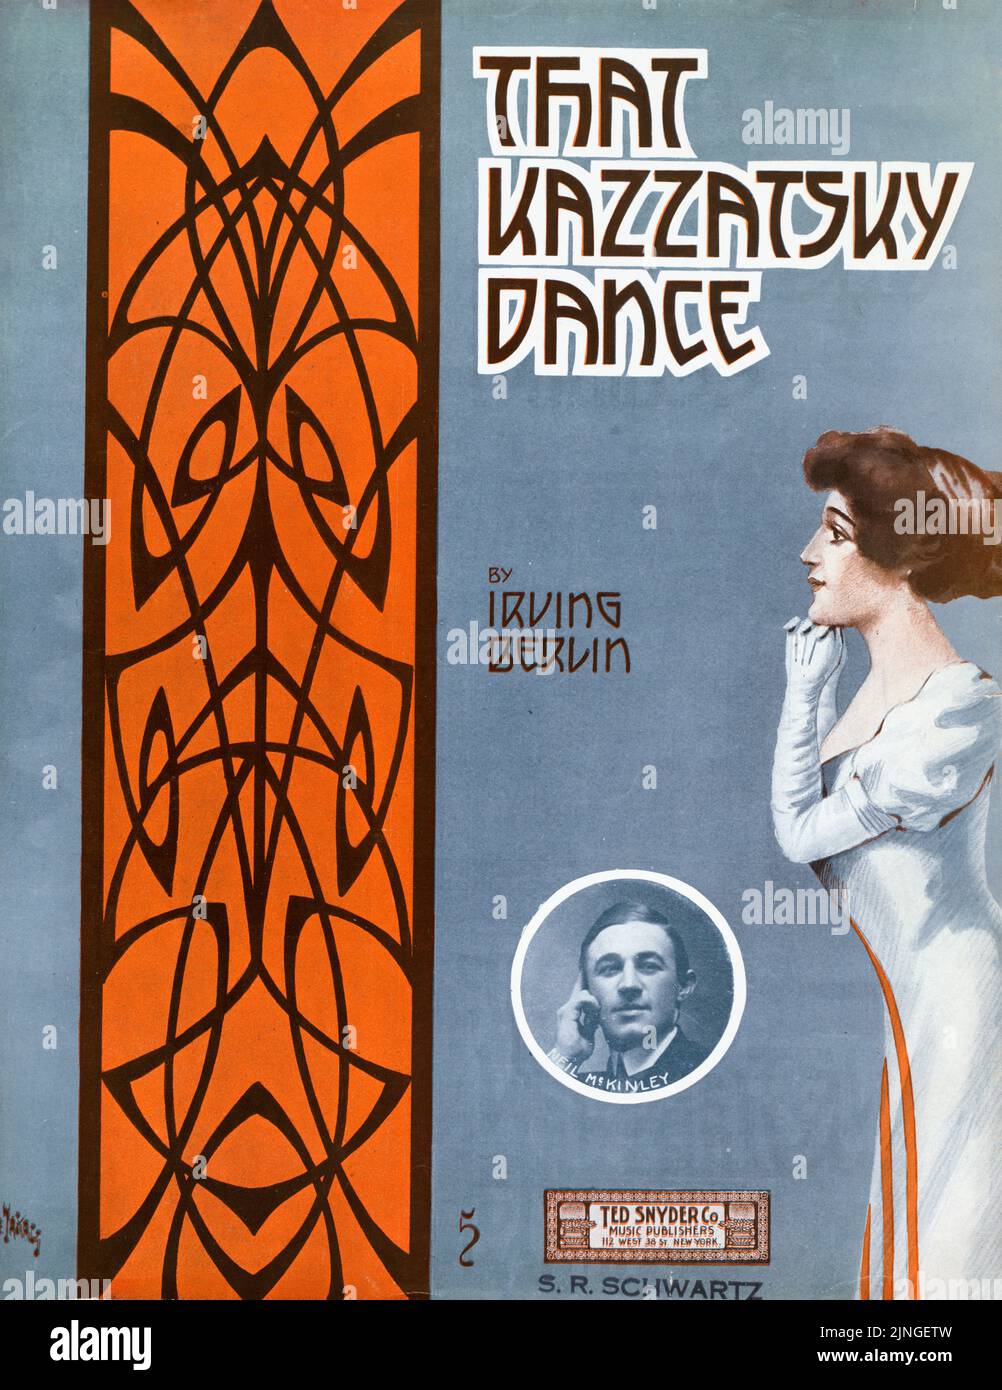 That Kazzatsky Dance (1912) von Irving Berlin, Inset von Neil McKinley, herausgegeben von Ted Snyder Company. Titelblatt mit Noten. Illustration von André De Takacs Stockfoto